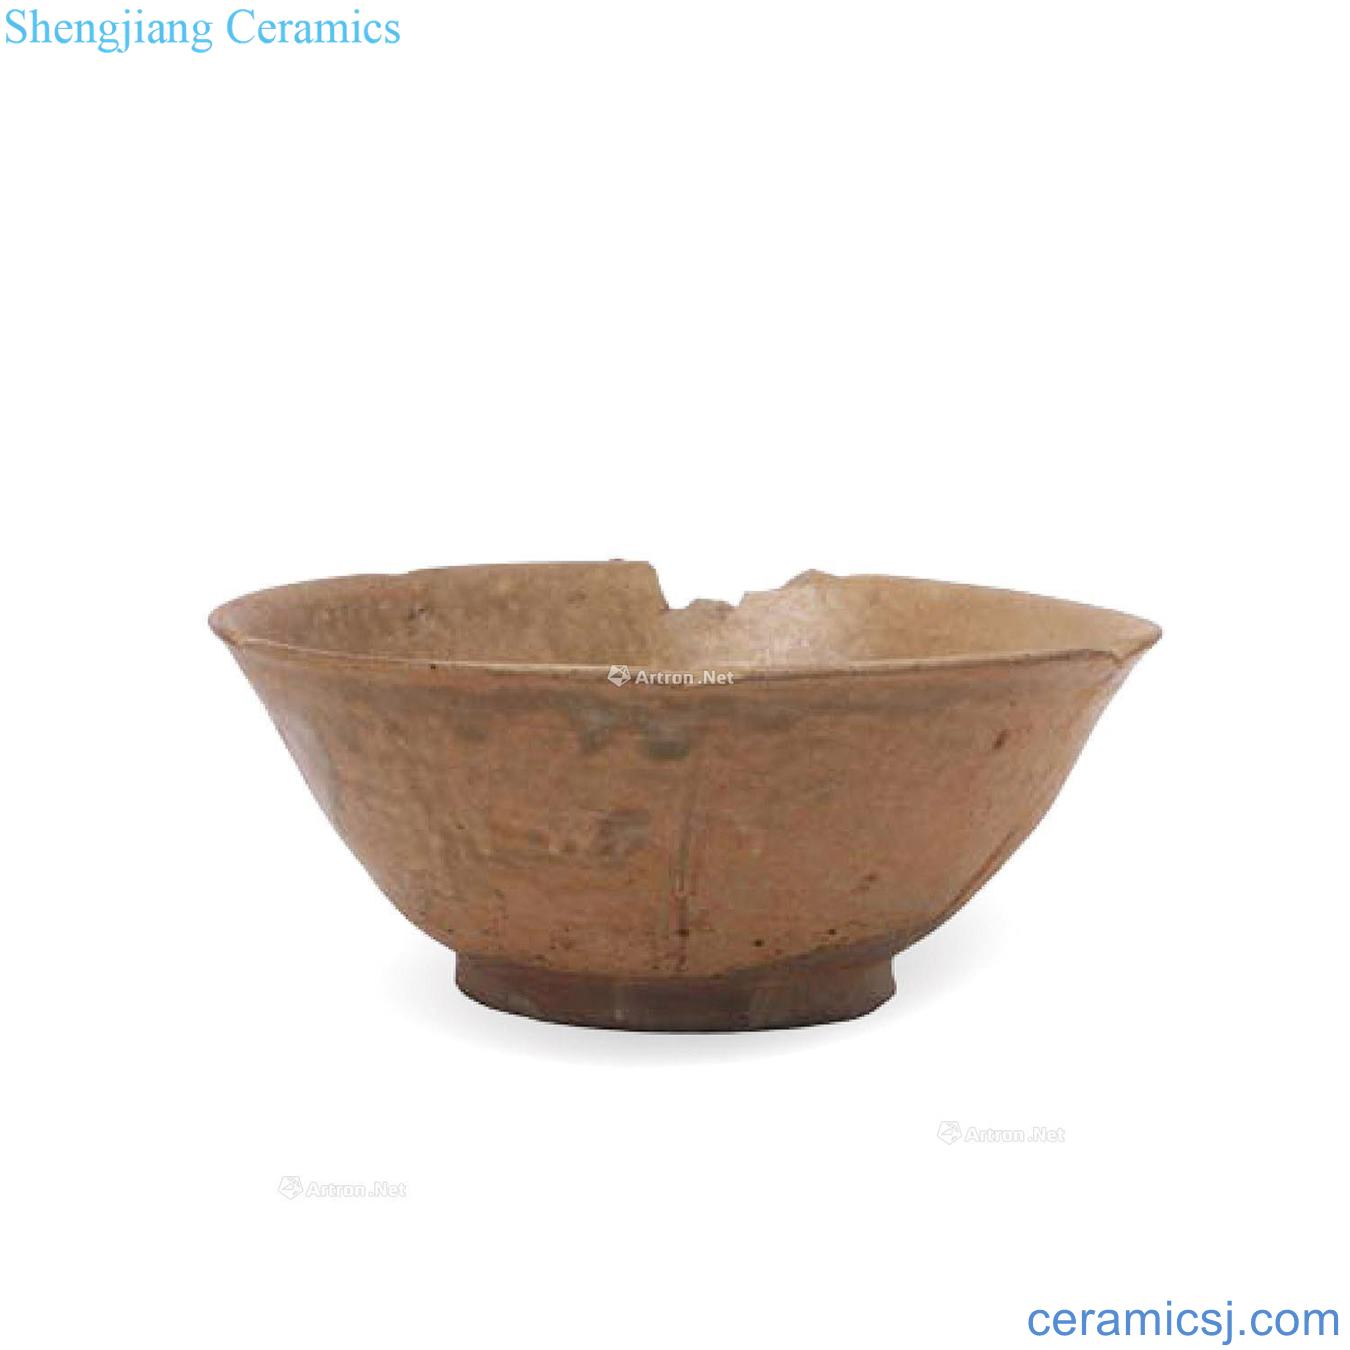 The kiln celadon kwai bowl